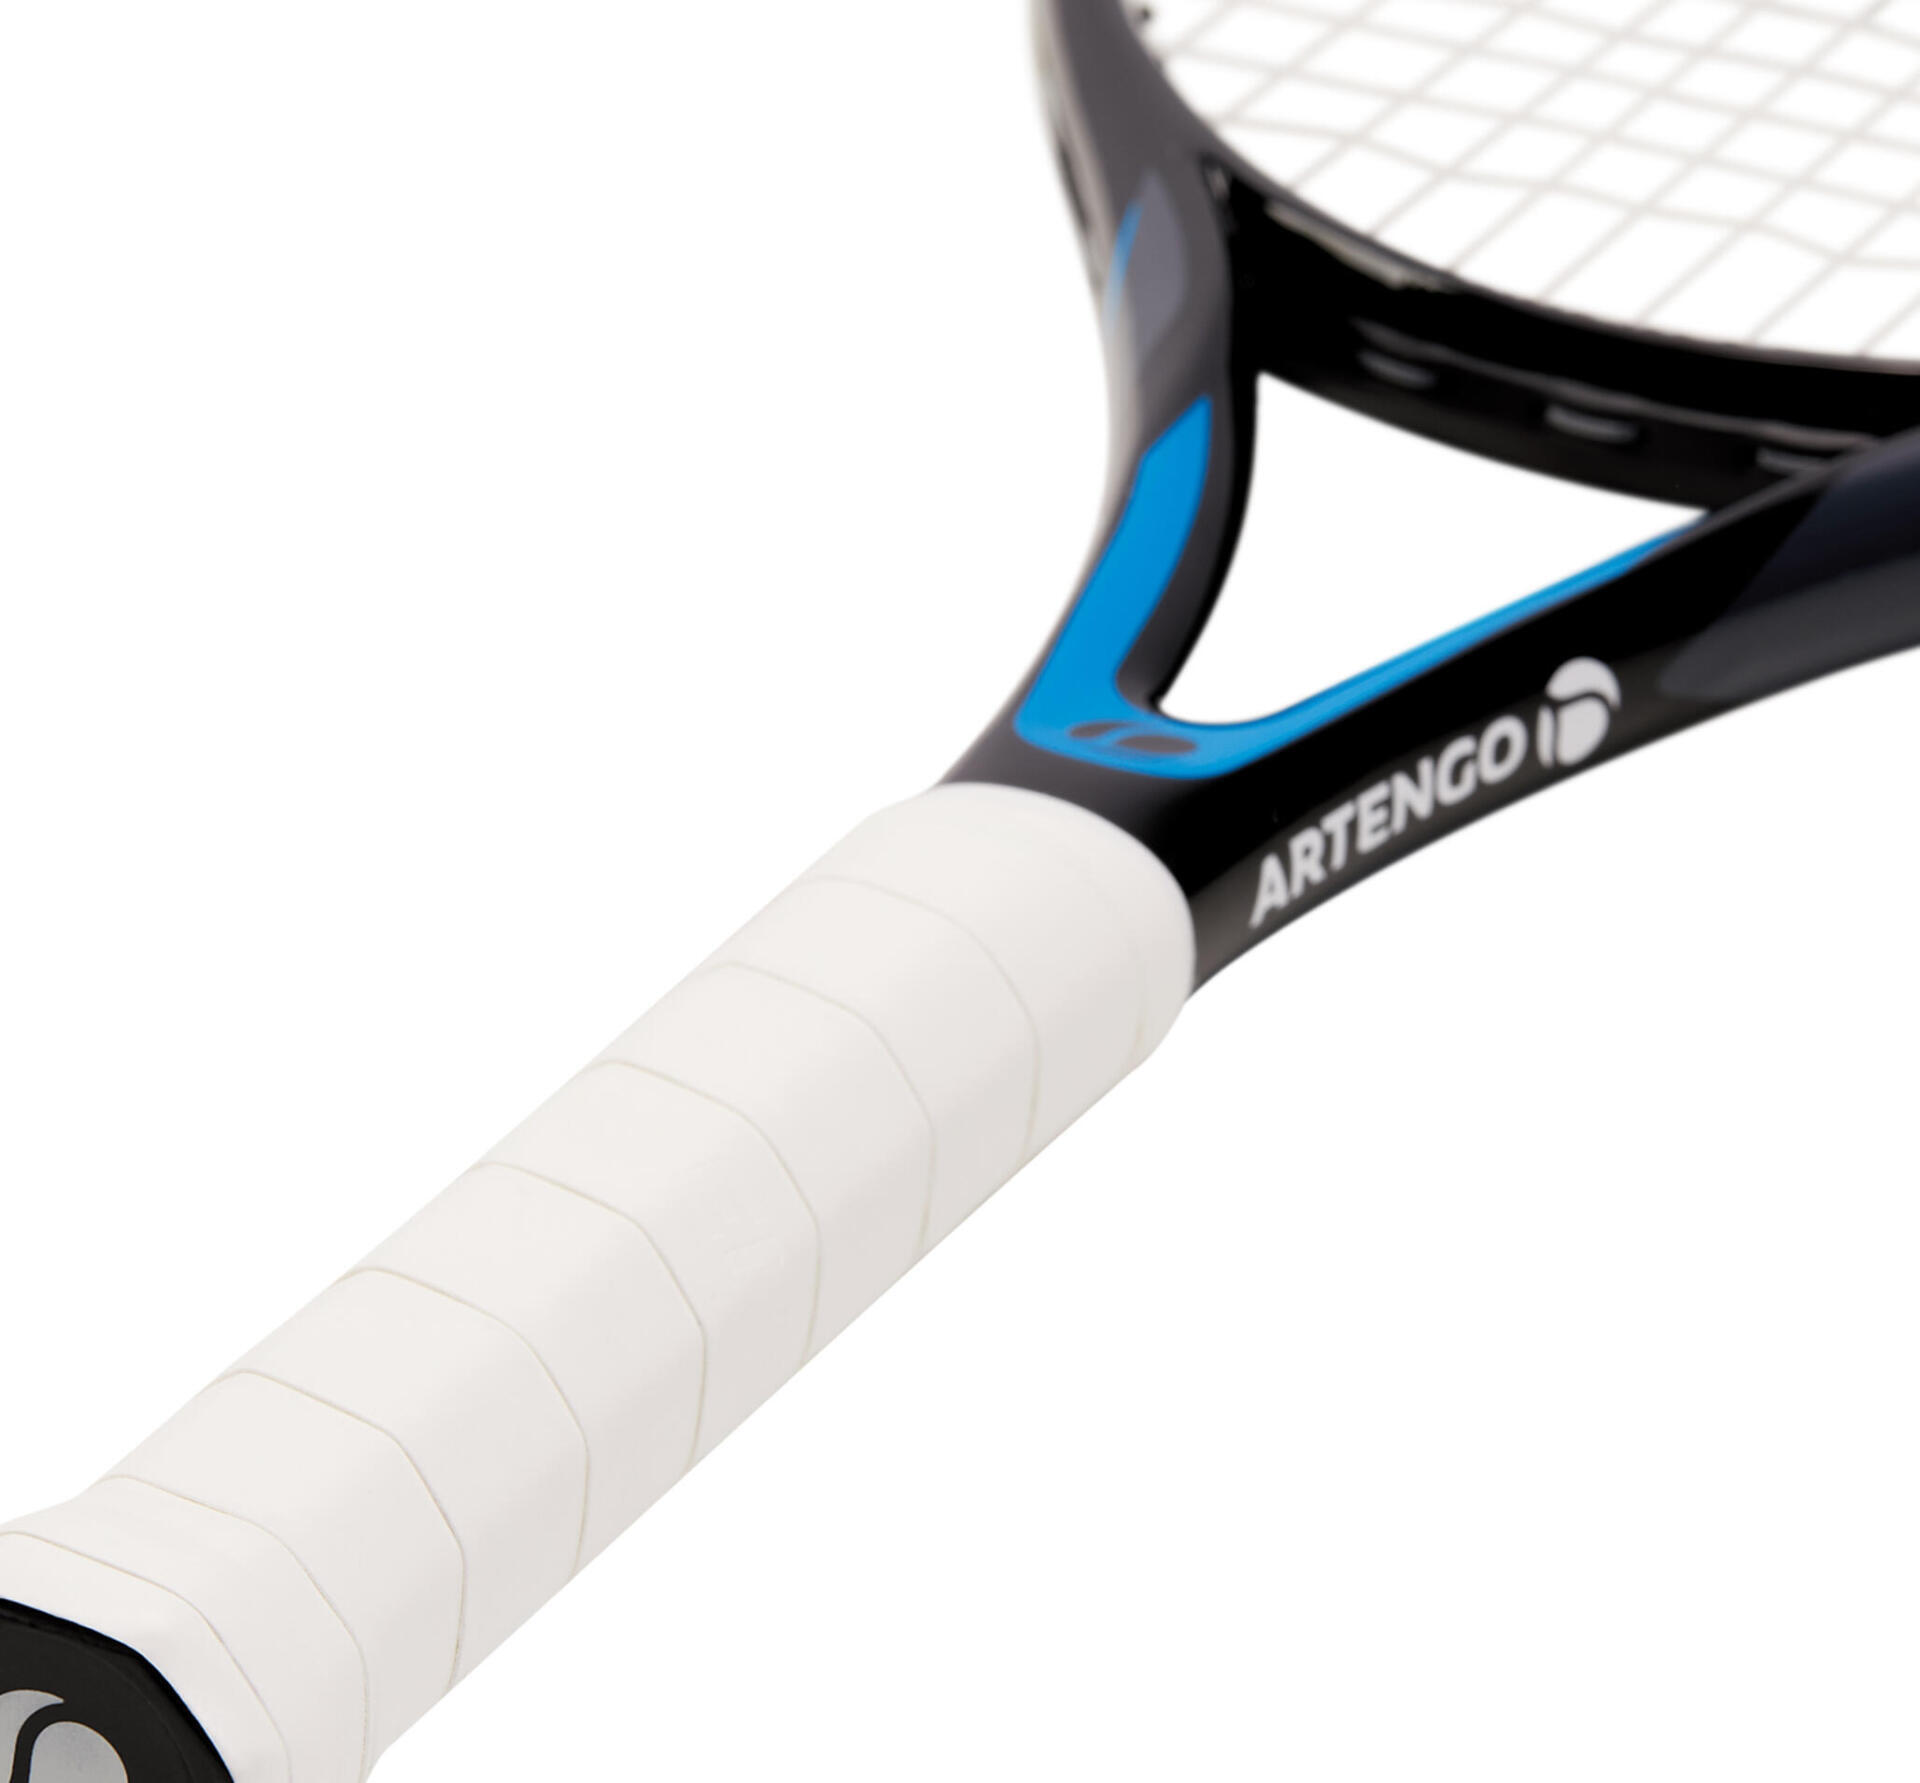 ¿Cómo elegir la raqueta adecuada en tenis según tu nivel de práctica?